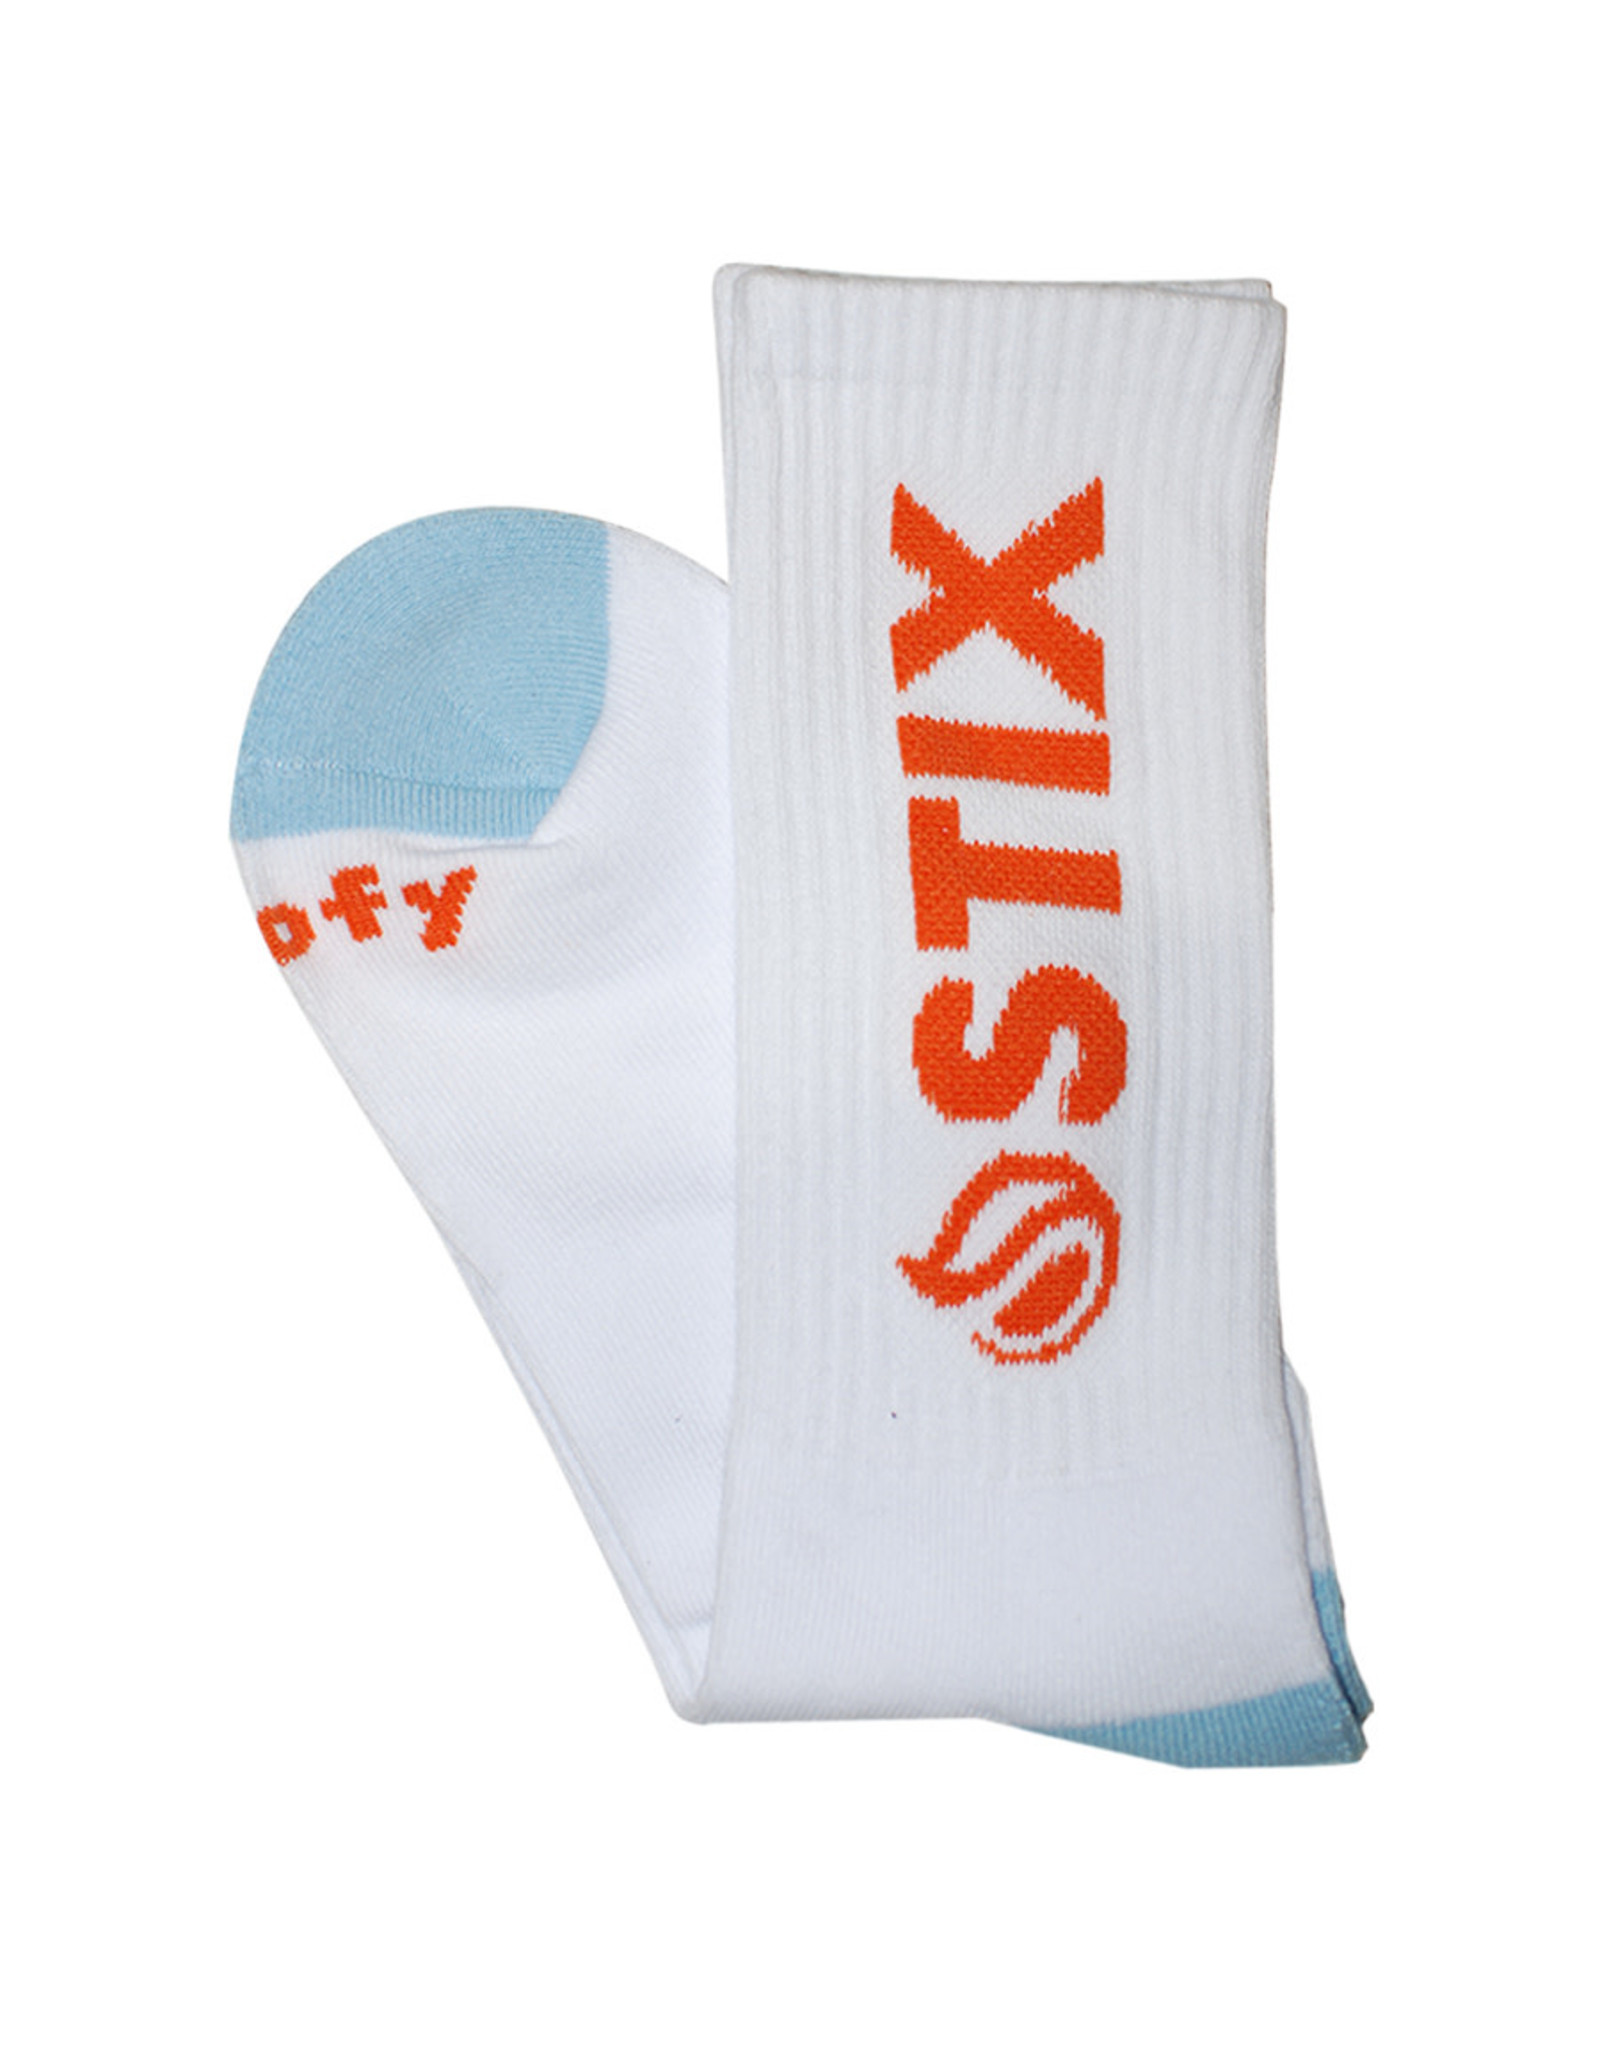 Stix SGV Stix Socks Classic Crew (White/Blue/Orange)